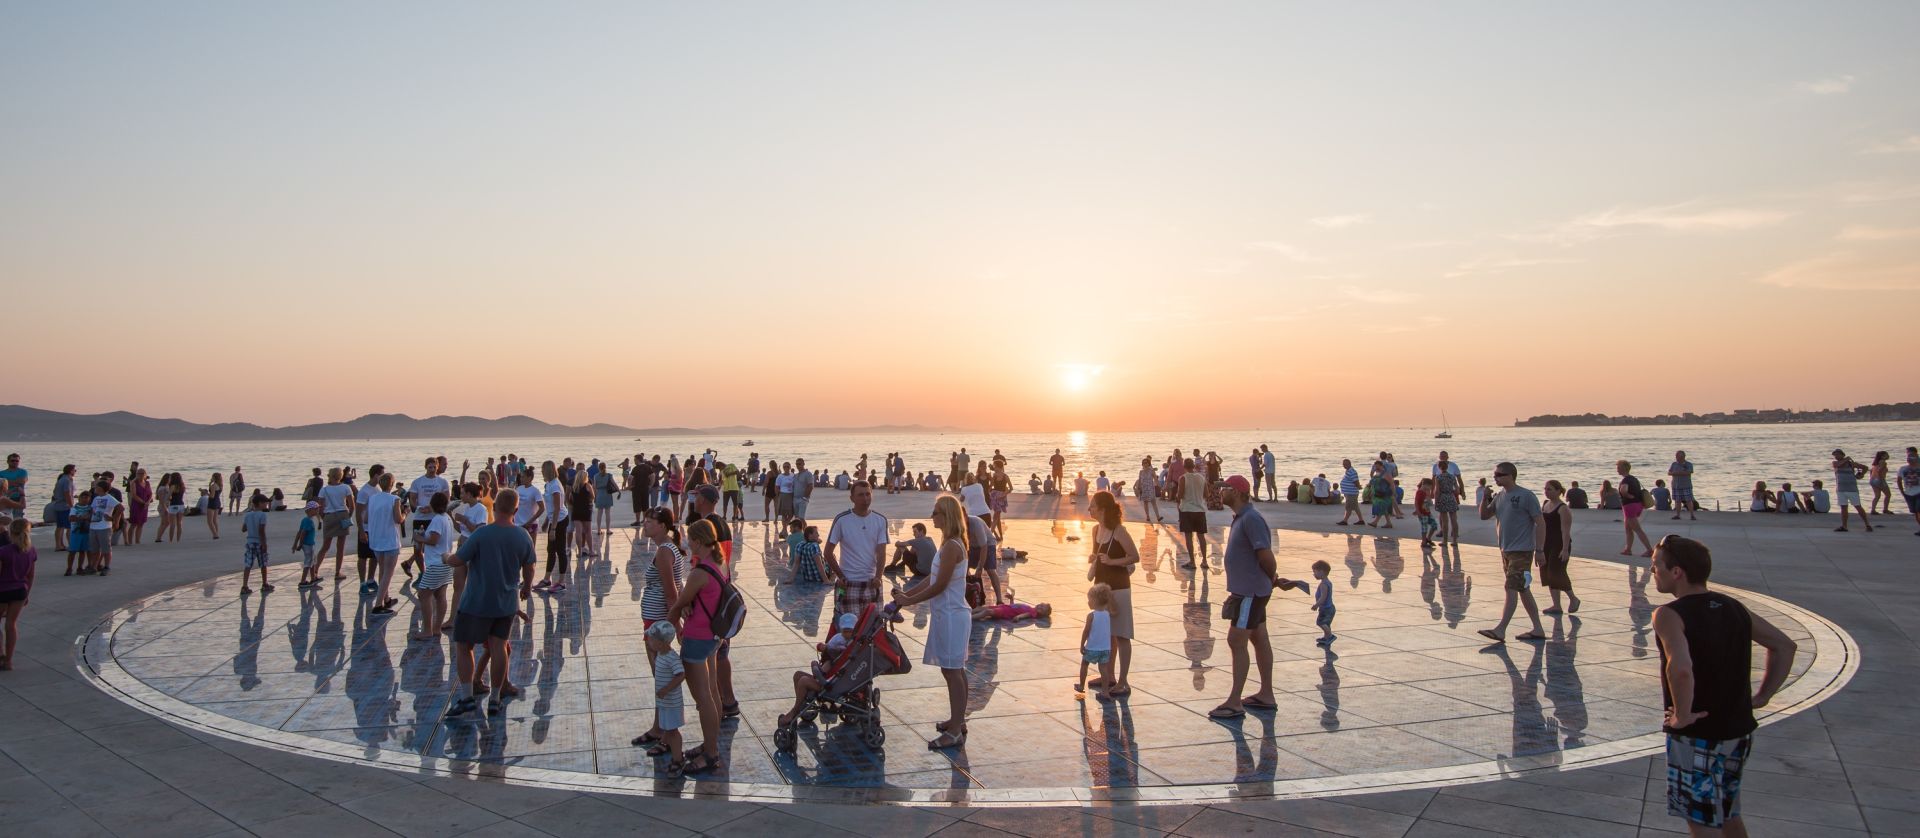 18.07.2015., Zadar - Brojni domaci i stani gosti, svatko na svoj nacin, uzivali u zalasku sunca.
Photo: Dino Stanin/PIXSELL